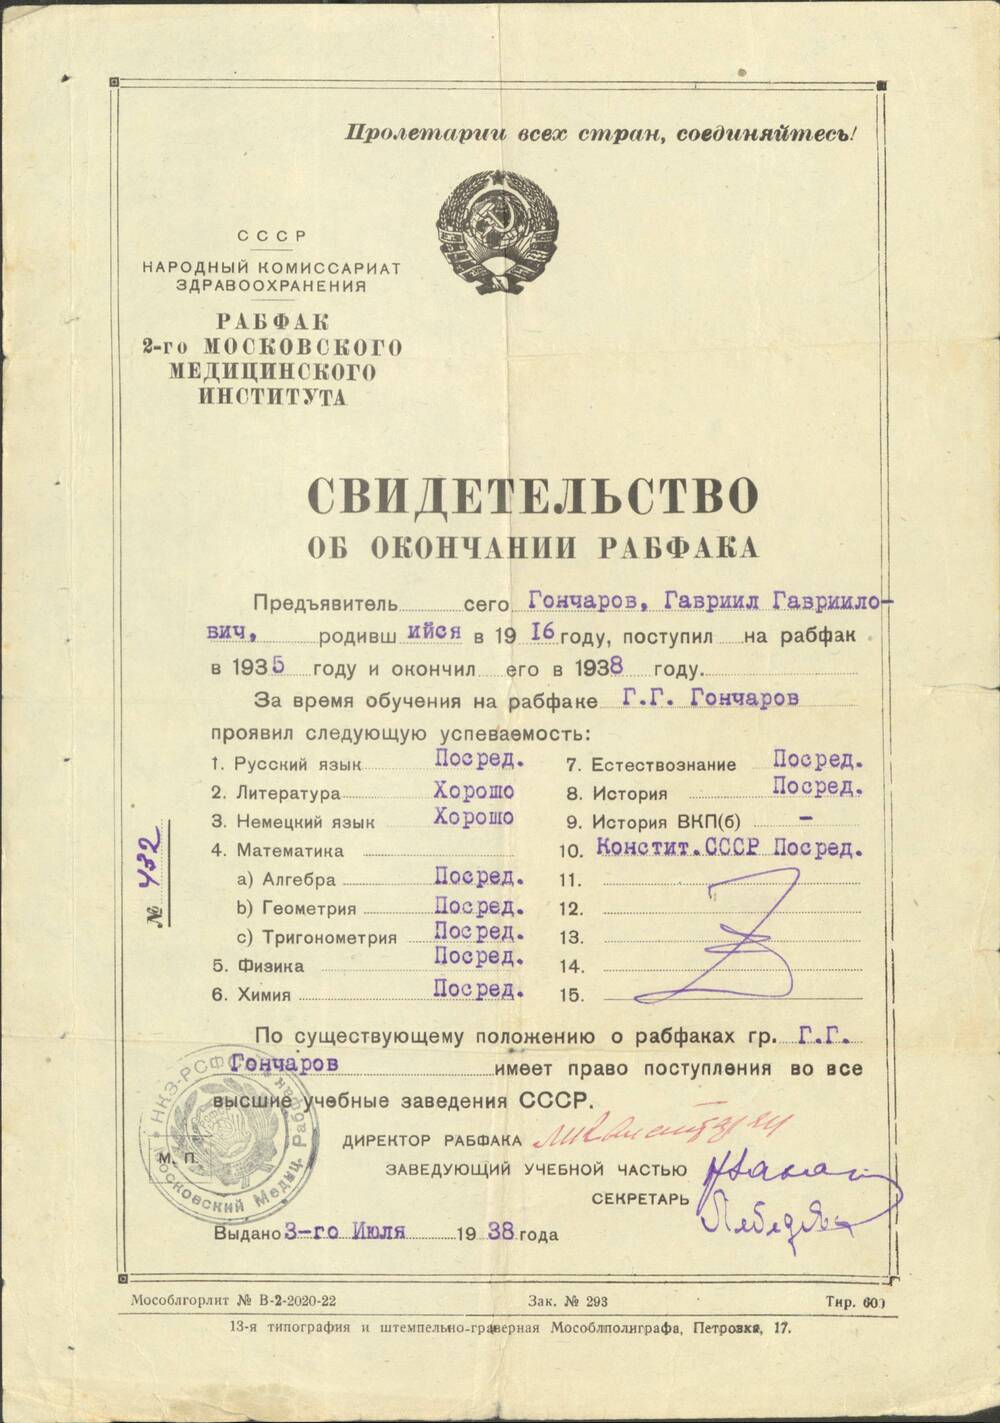 Свидетельство № 432 об окончании Рабфака 2-го Московского медицинского института на имя Г.Г. Гончарова от 3 июля 1938 г.